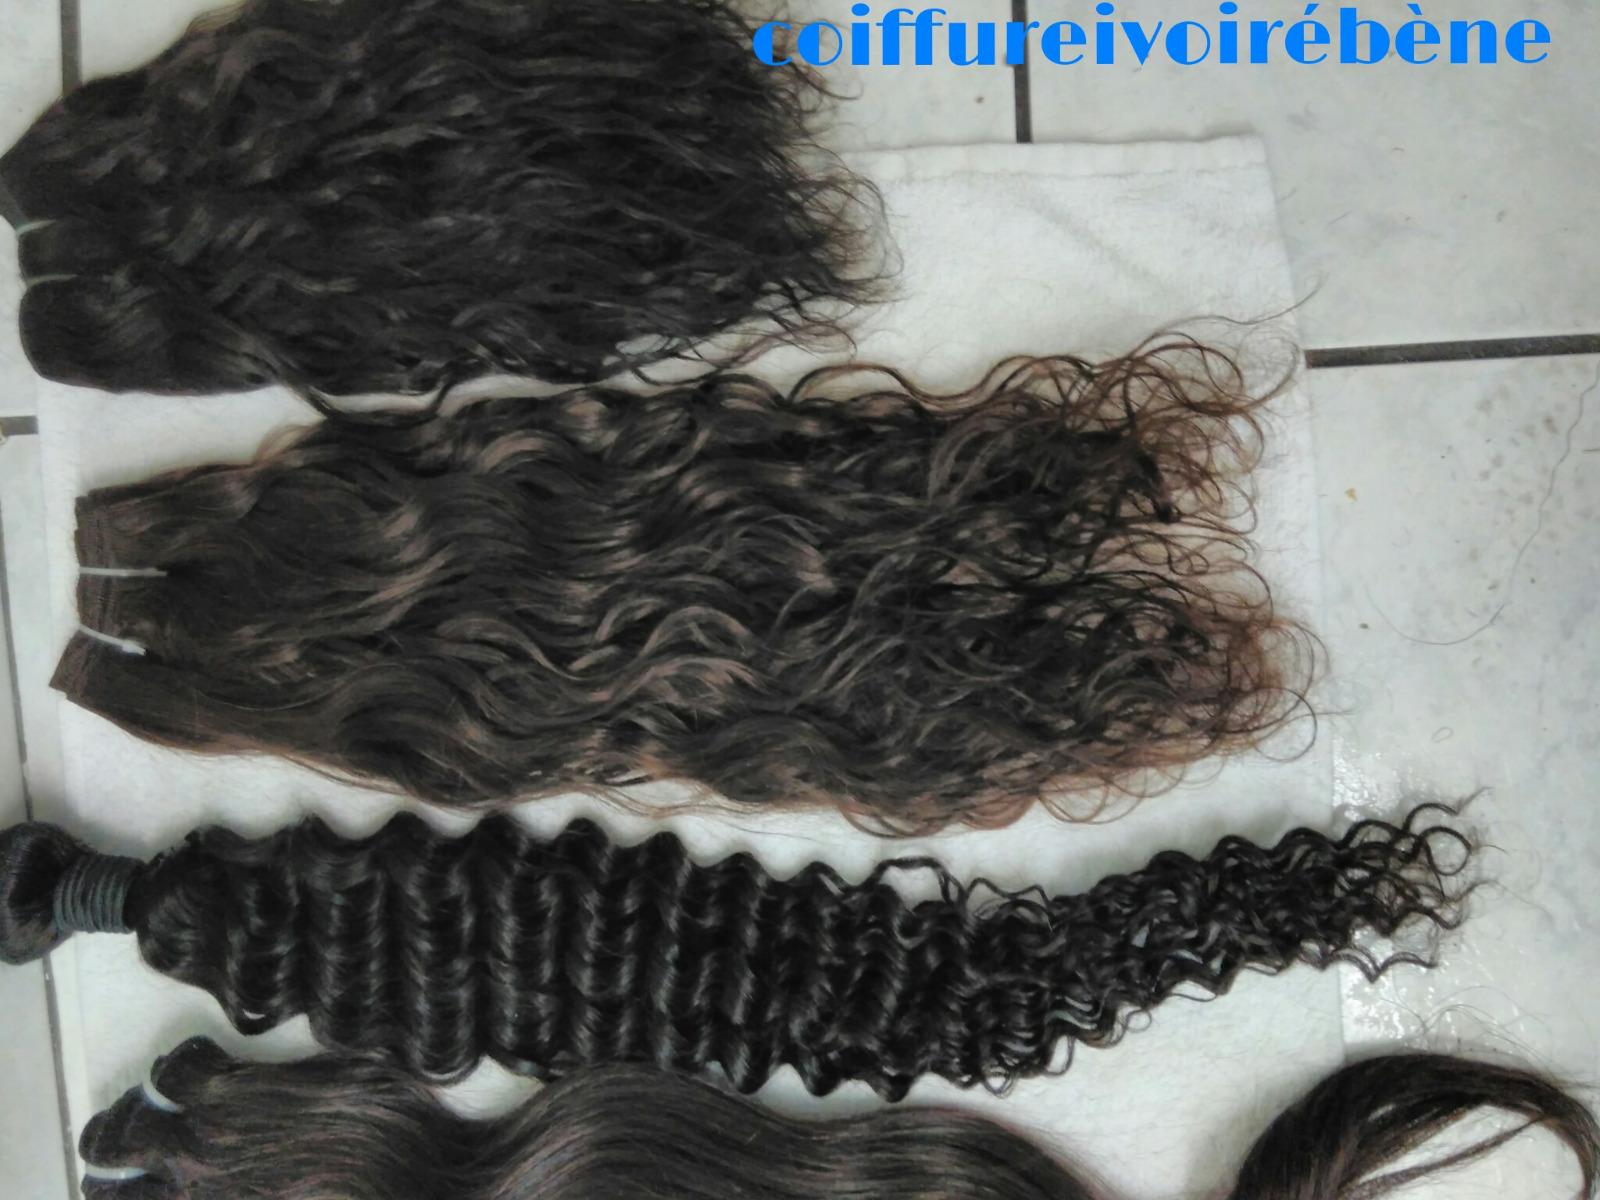 Cheveux ondulés , bouclés, frisés 100% indiens vierges non traités chimiquement et jamais colorés.